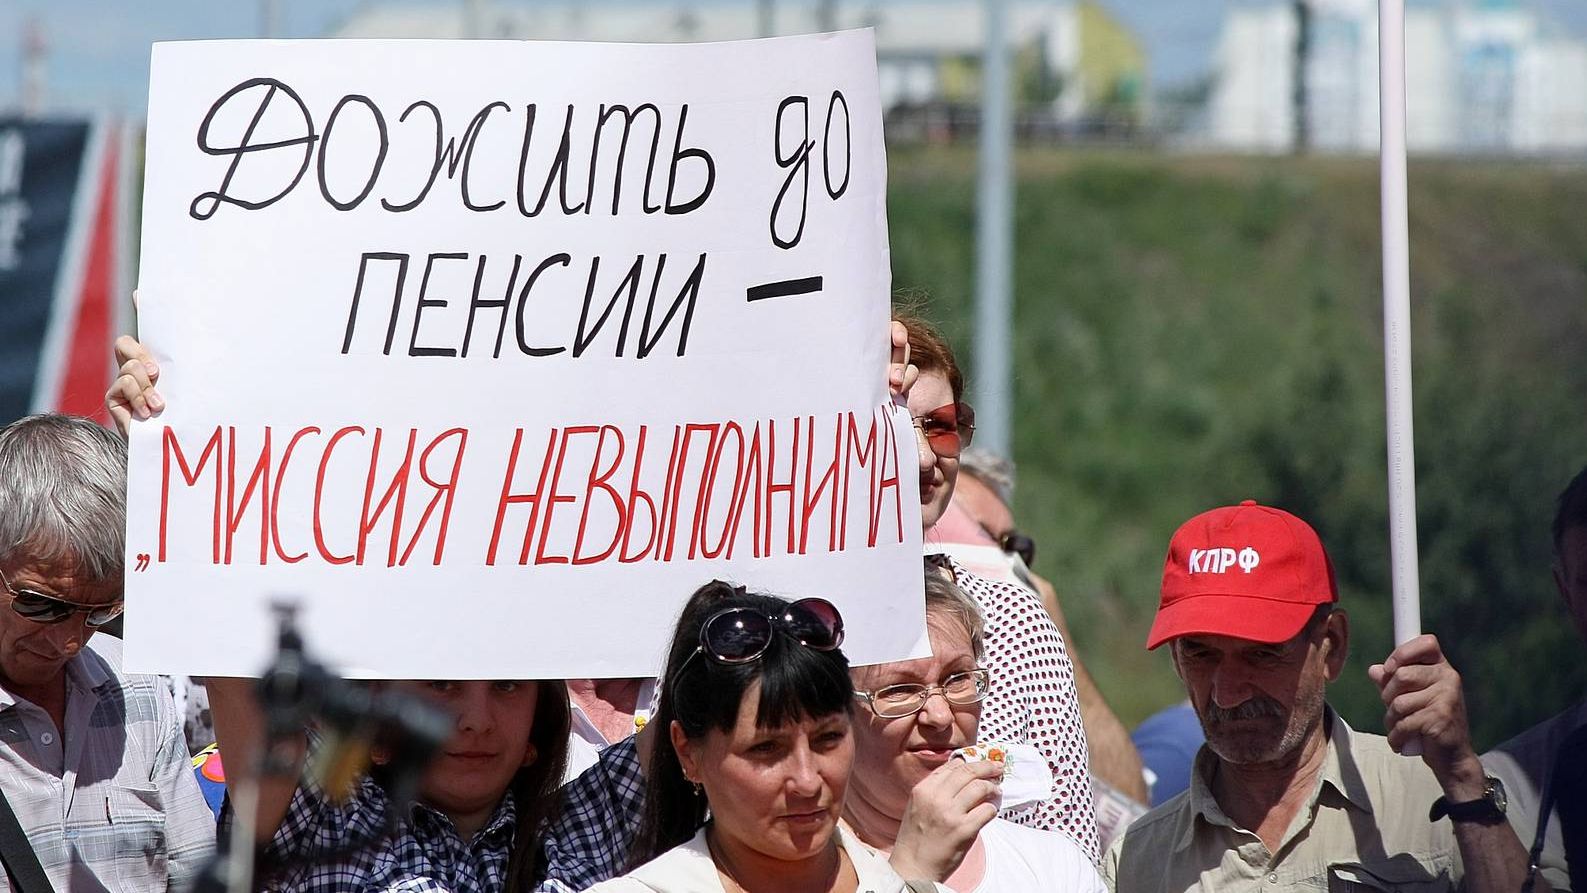 Очередная пенсионная реформа на подходе, но экономист М. Делягин против ее проведения